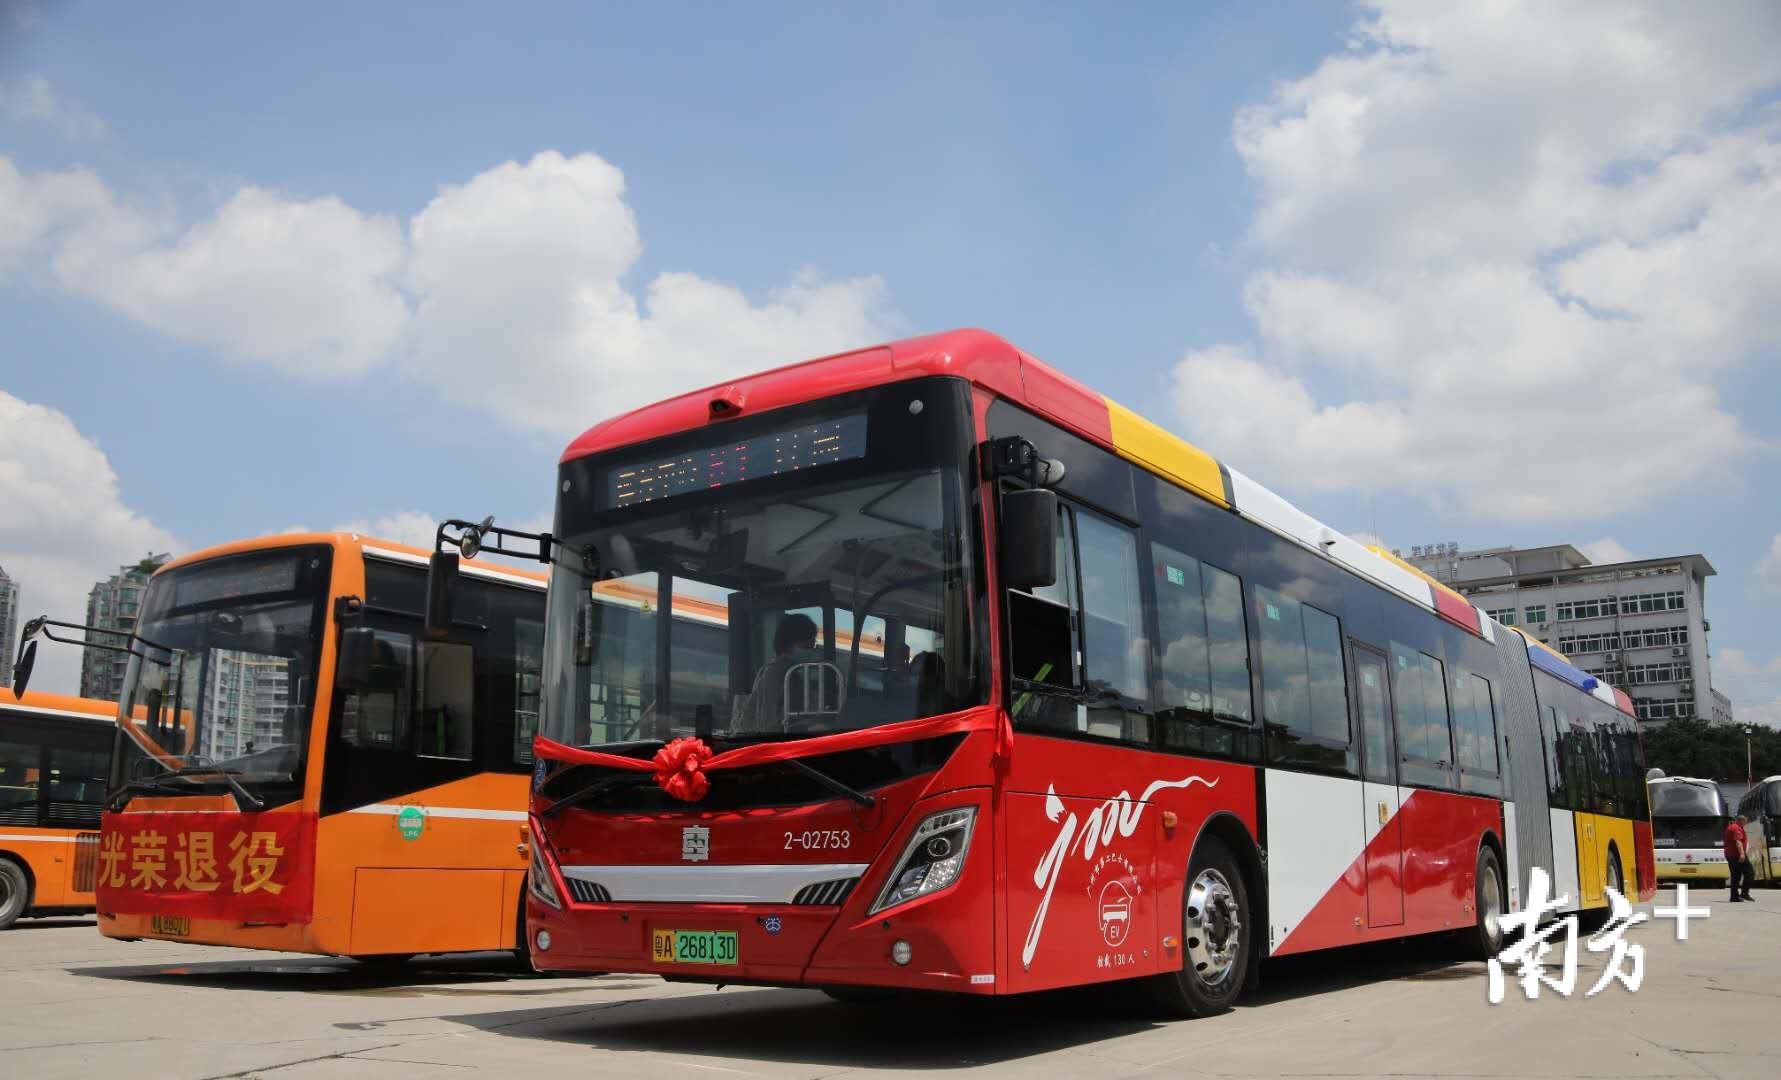 【POV52先行】上海巴士三公司01线公交车 上海西站-蓝村路南泉路 第一视角视频 _网络排行榜